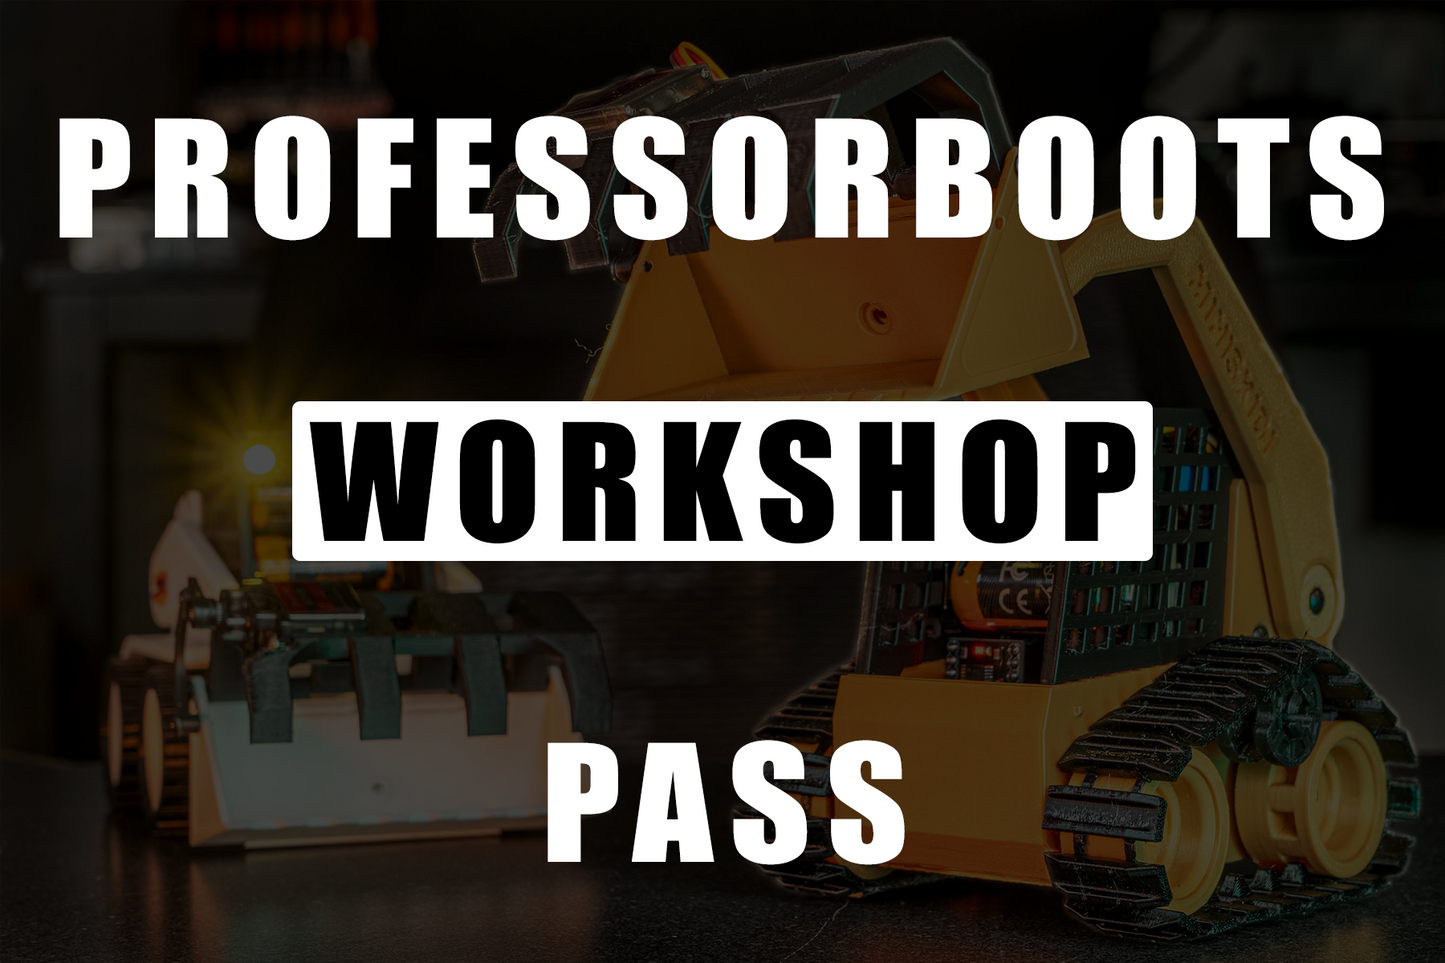 ProfessorBoots Workshop